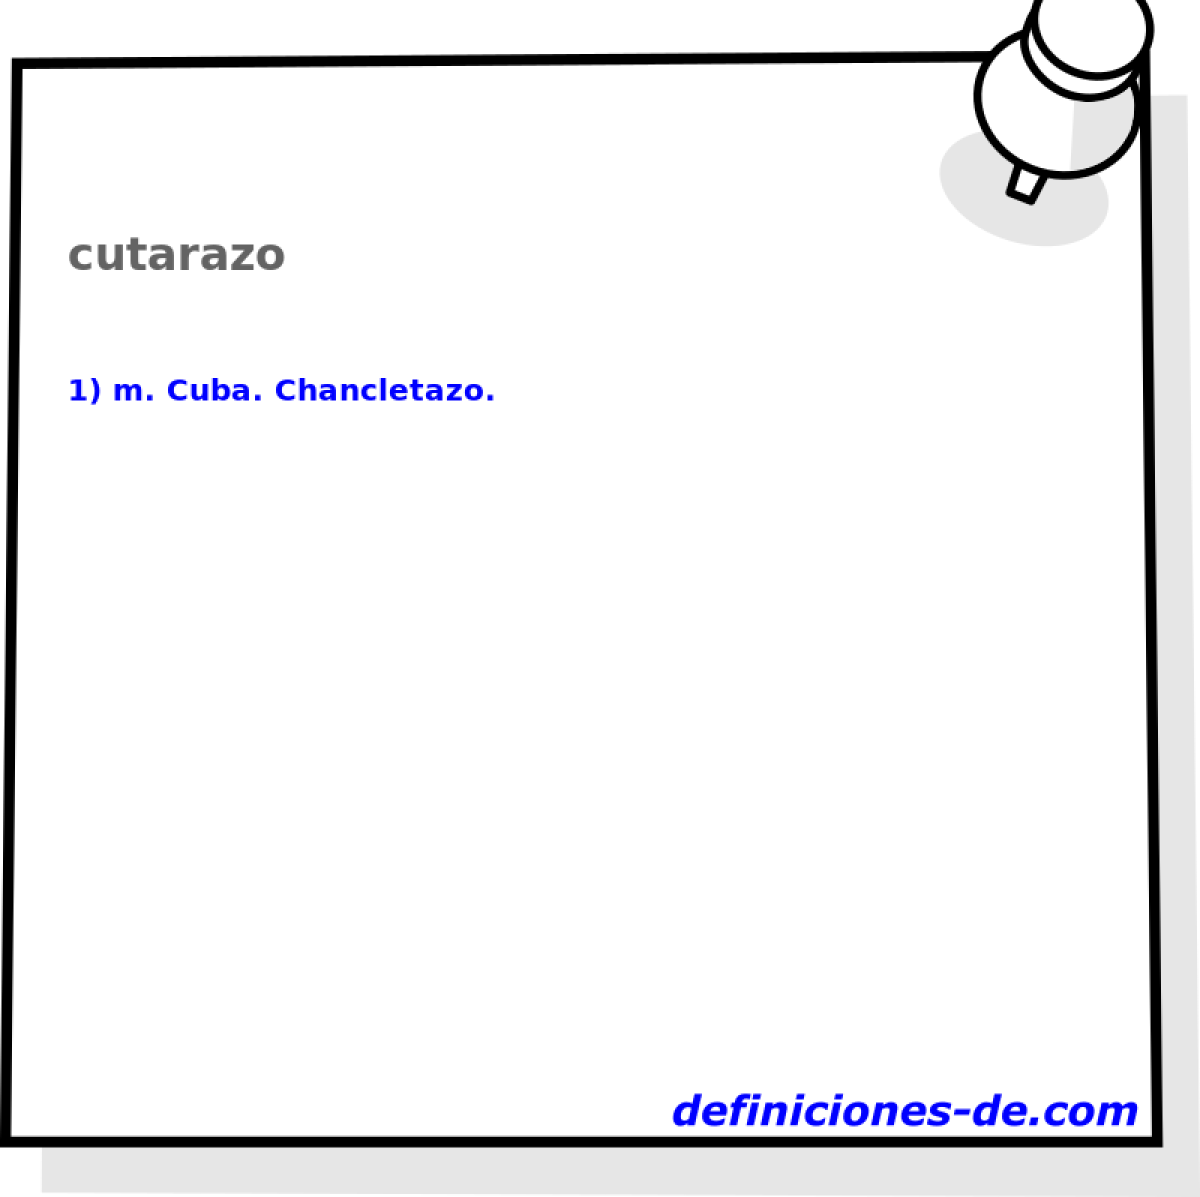 cutarazo 